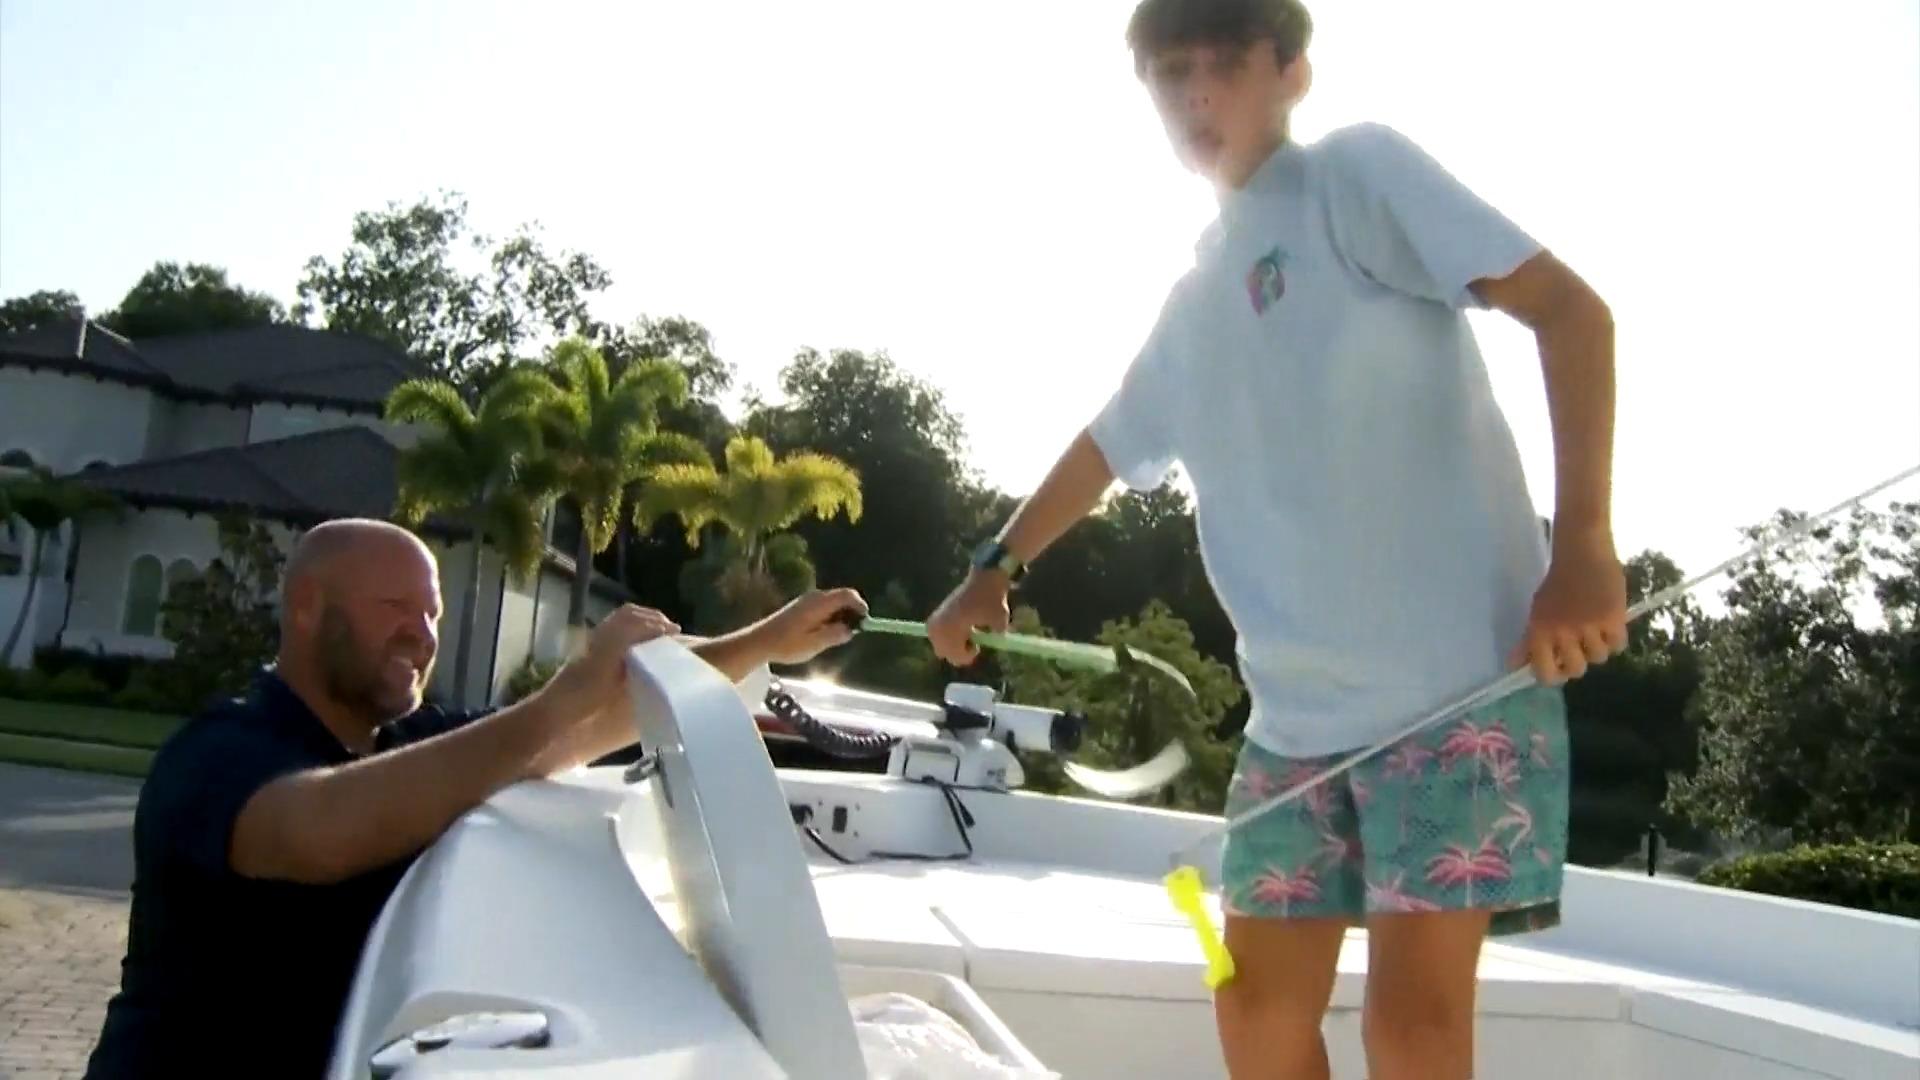 Hai beißt Jungen (13) ins Gesicht: "Es war so schnell" Glück im Unglück